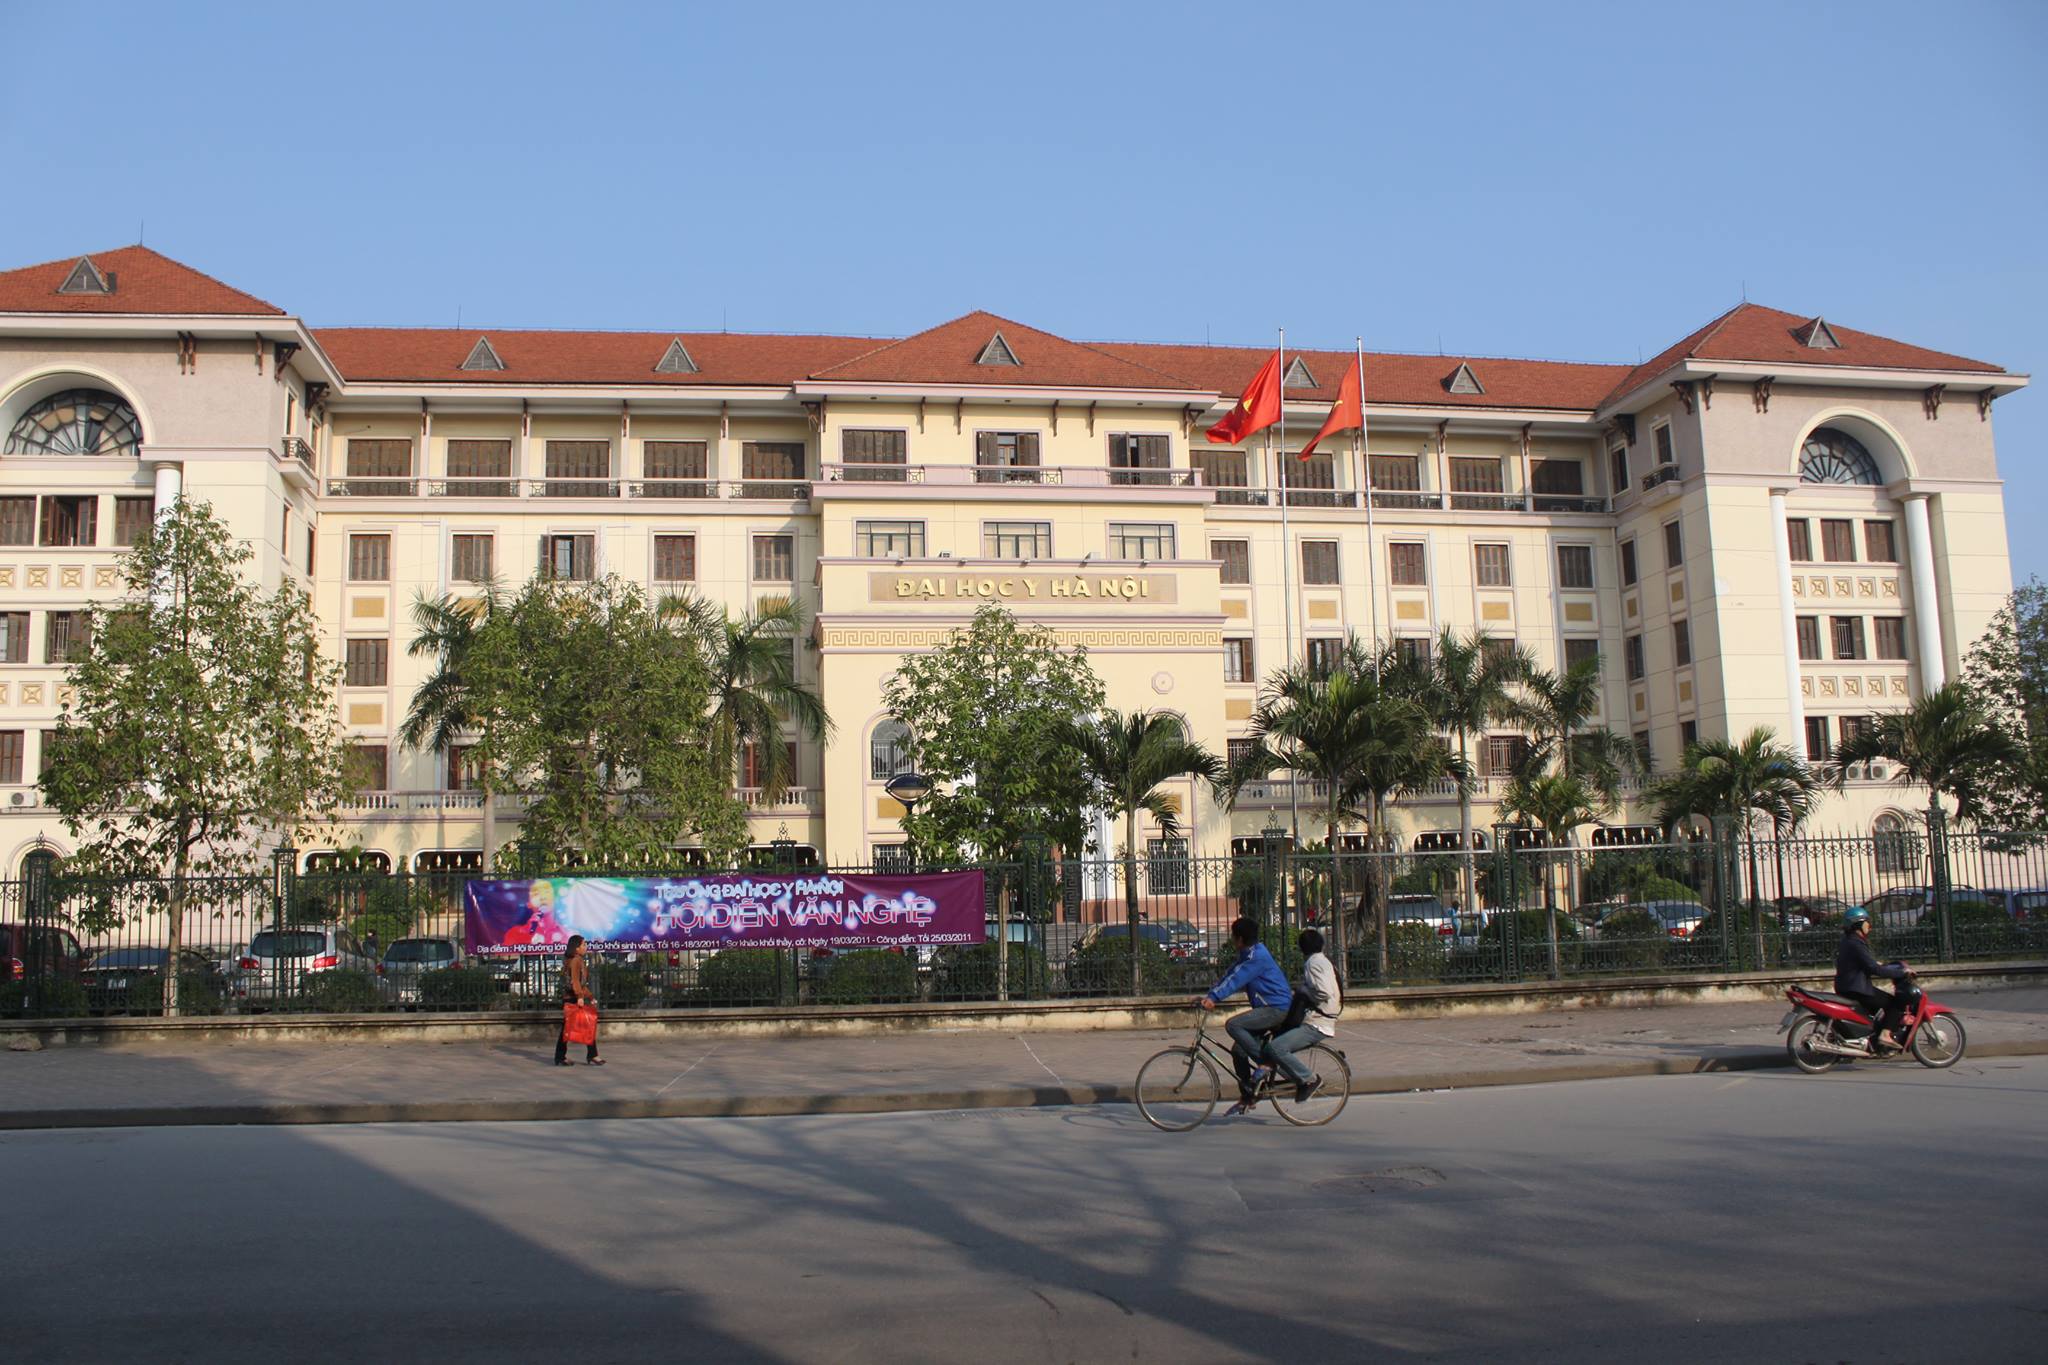 Đại học Y Hà Nội là một trường đại học y khoa hàng đầu